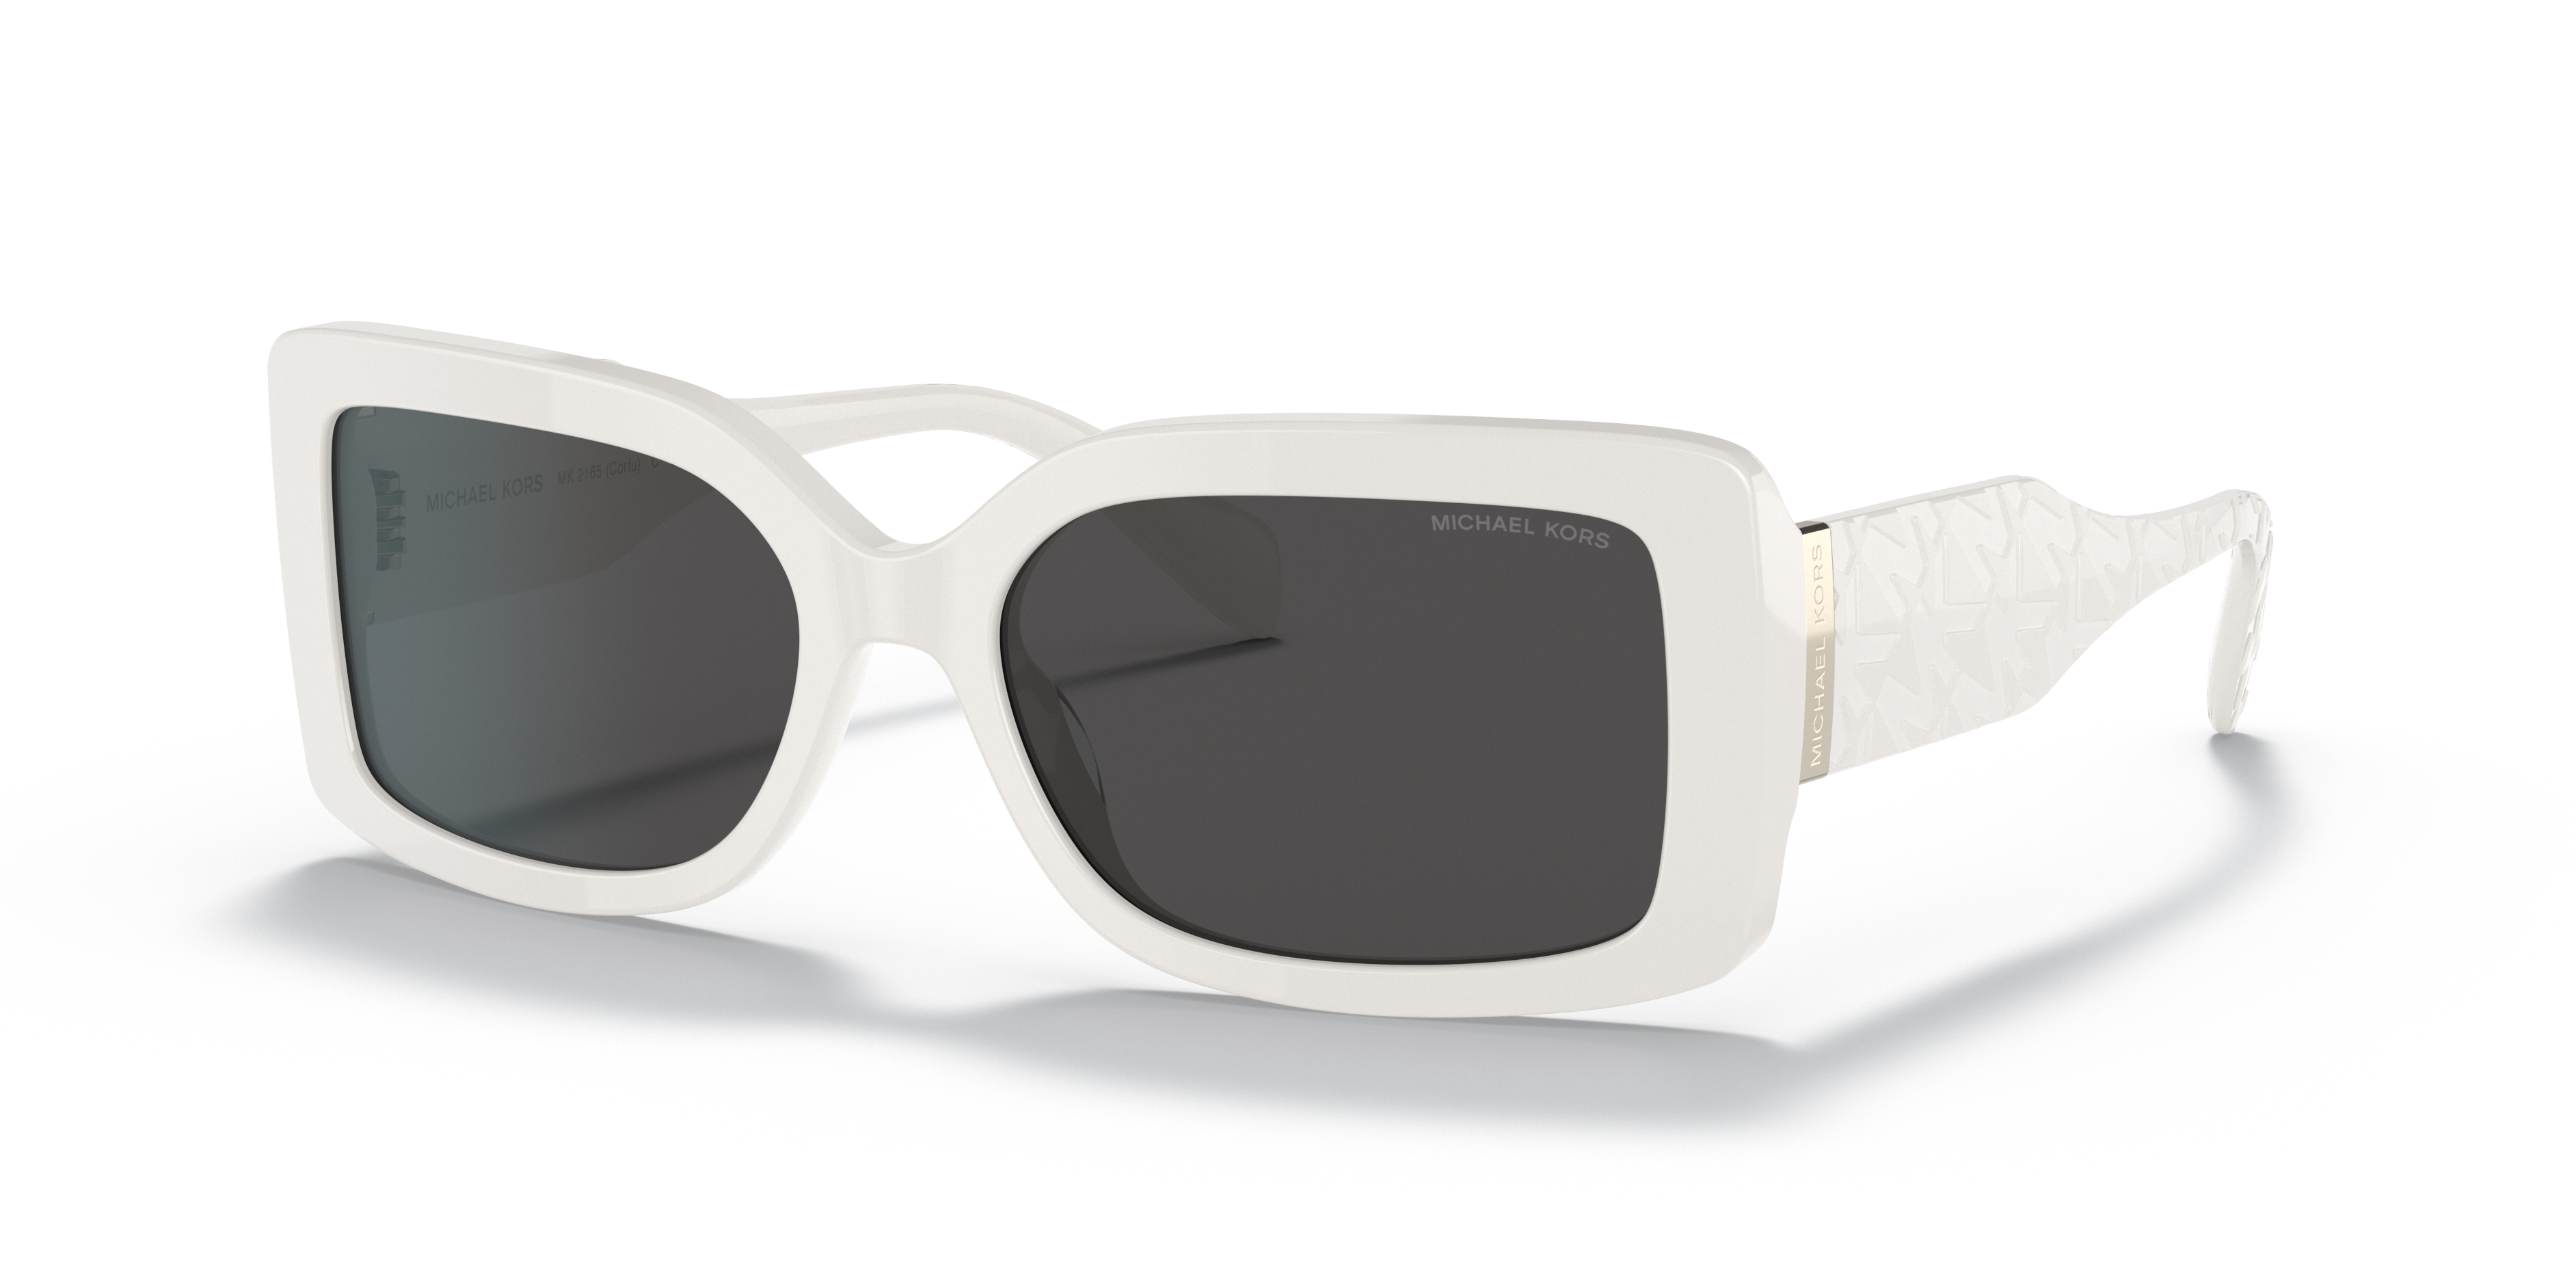 MICHAEL KORS Sunglasses MK2192 in 310087  white dark gray  Breuninger